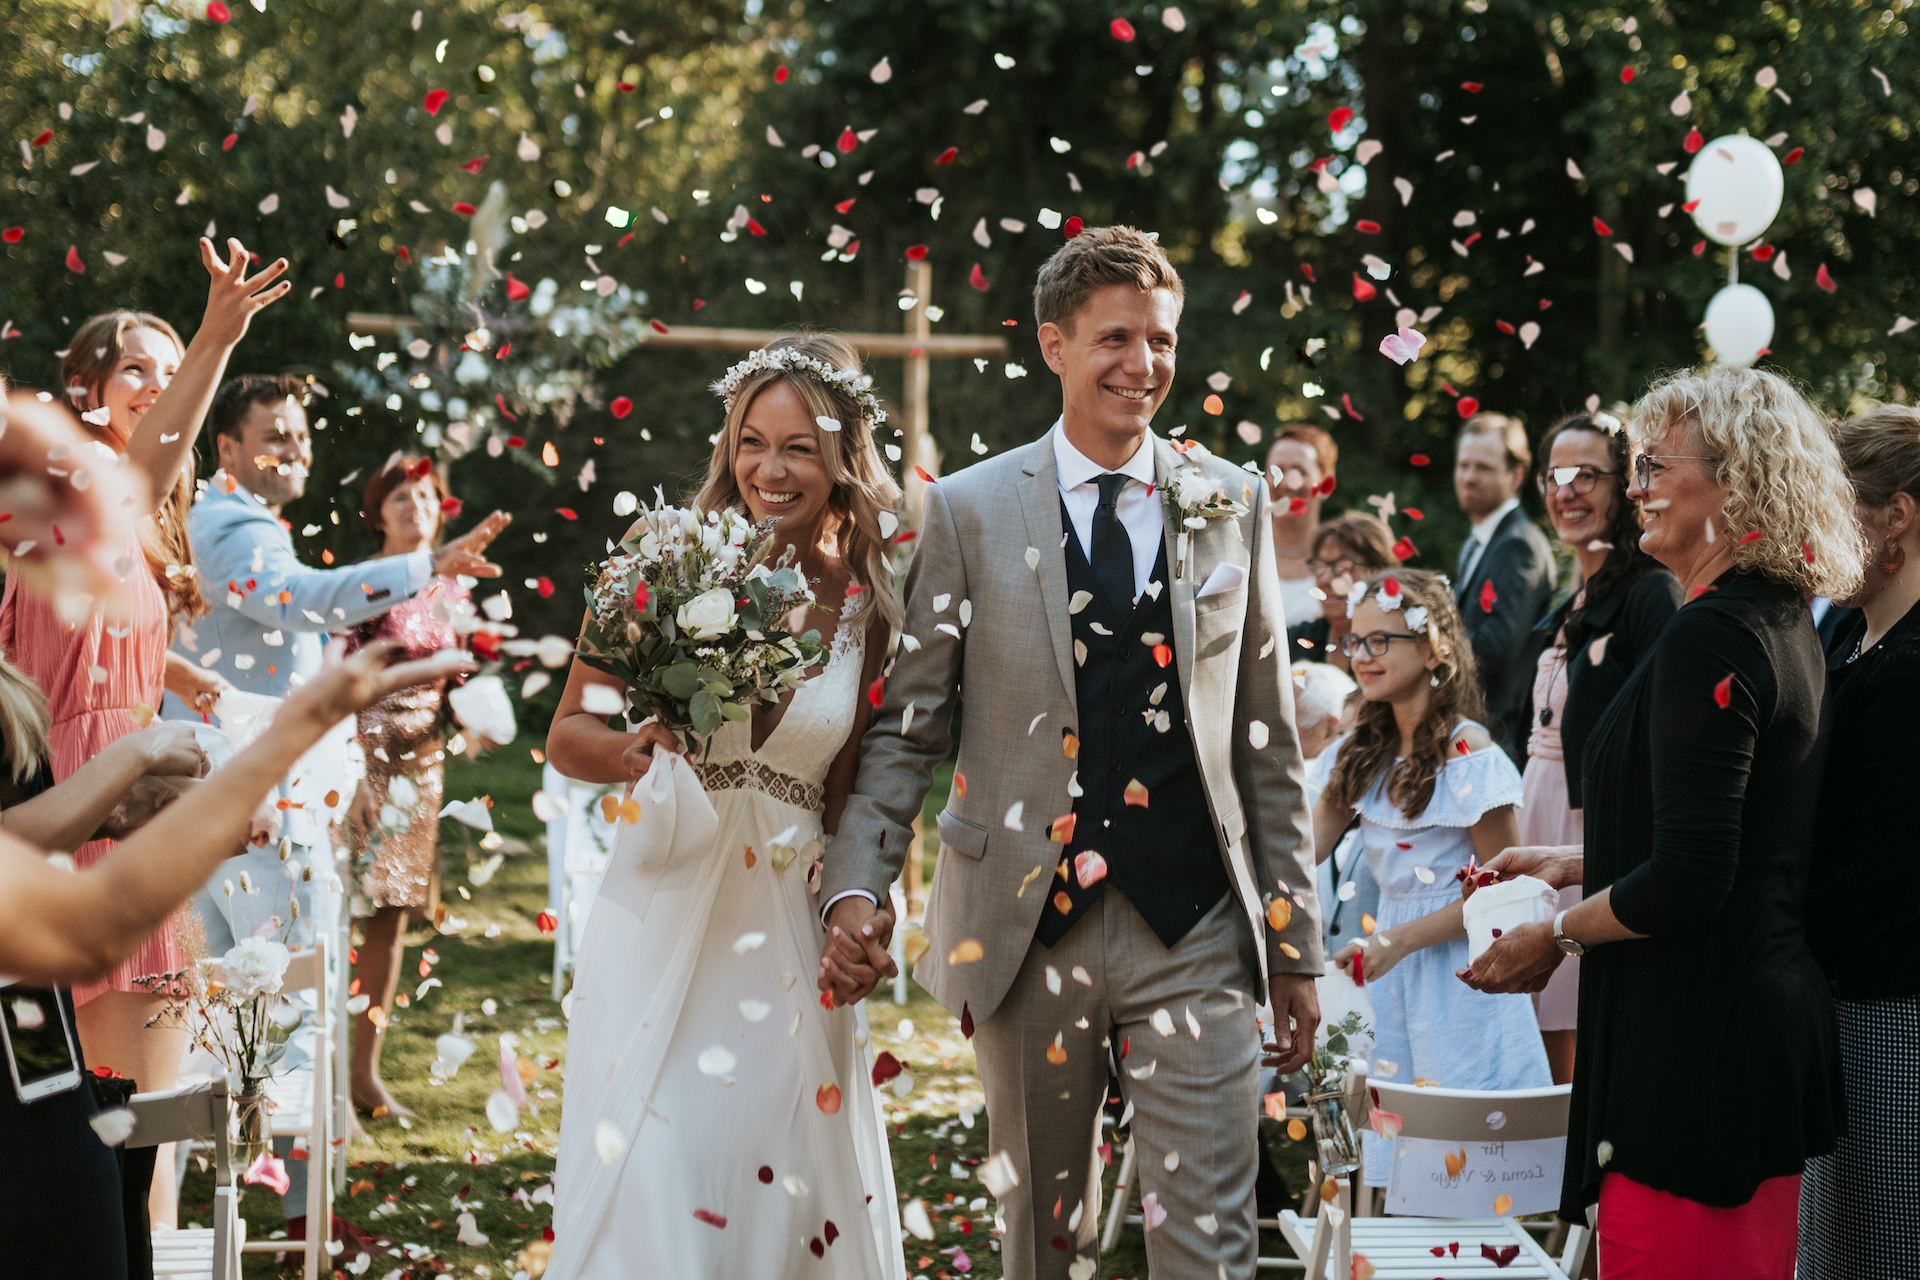 ein Brautpaar luft lachend durch einen Konfettiregen von Blten nach der Trauung (/images/bilder/thumbs/376_1_bild_5G1A3795_Kopie_2.jpg)